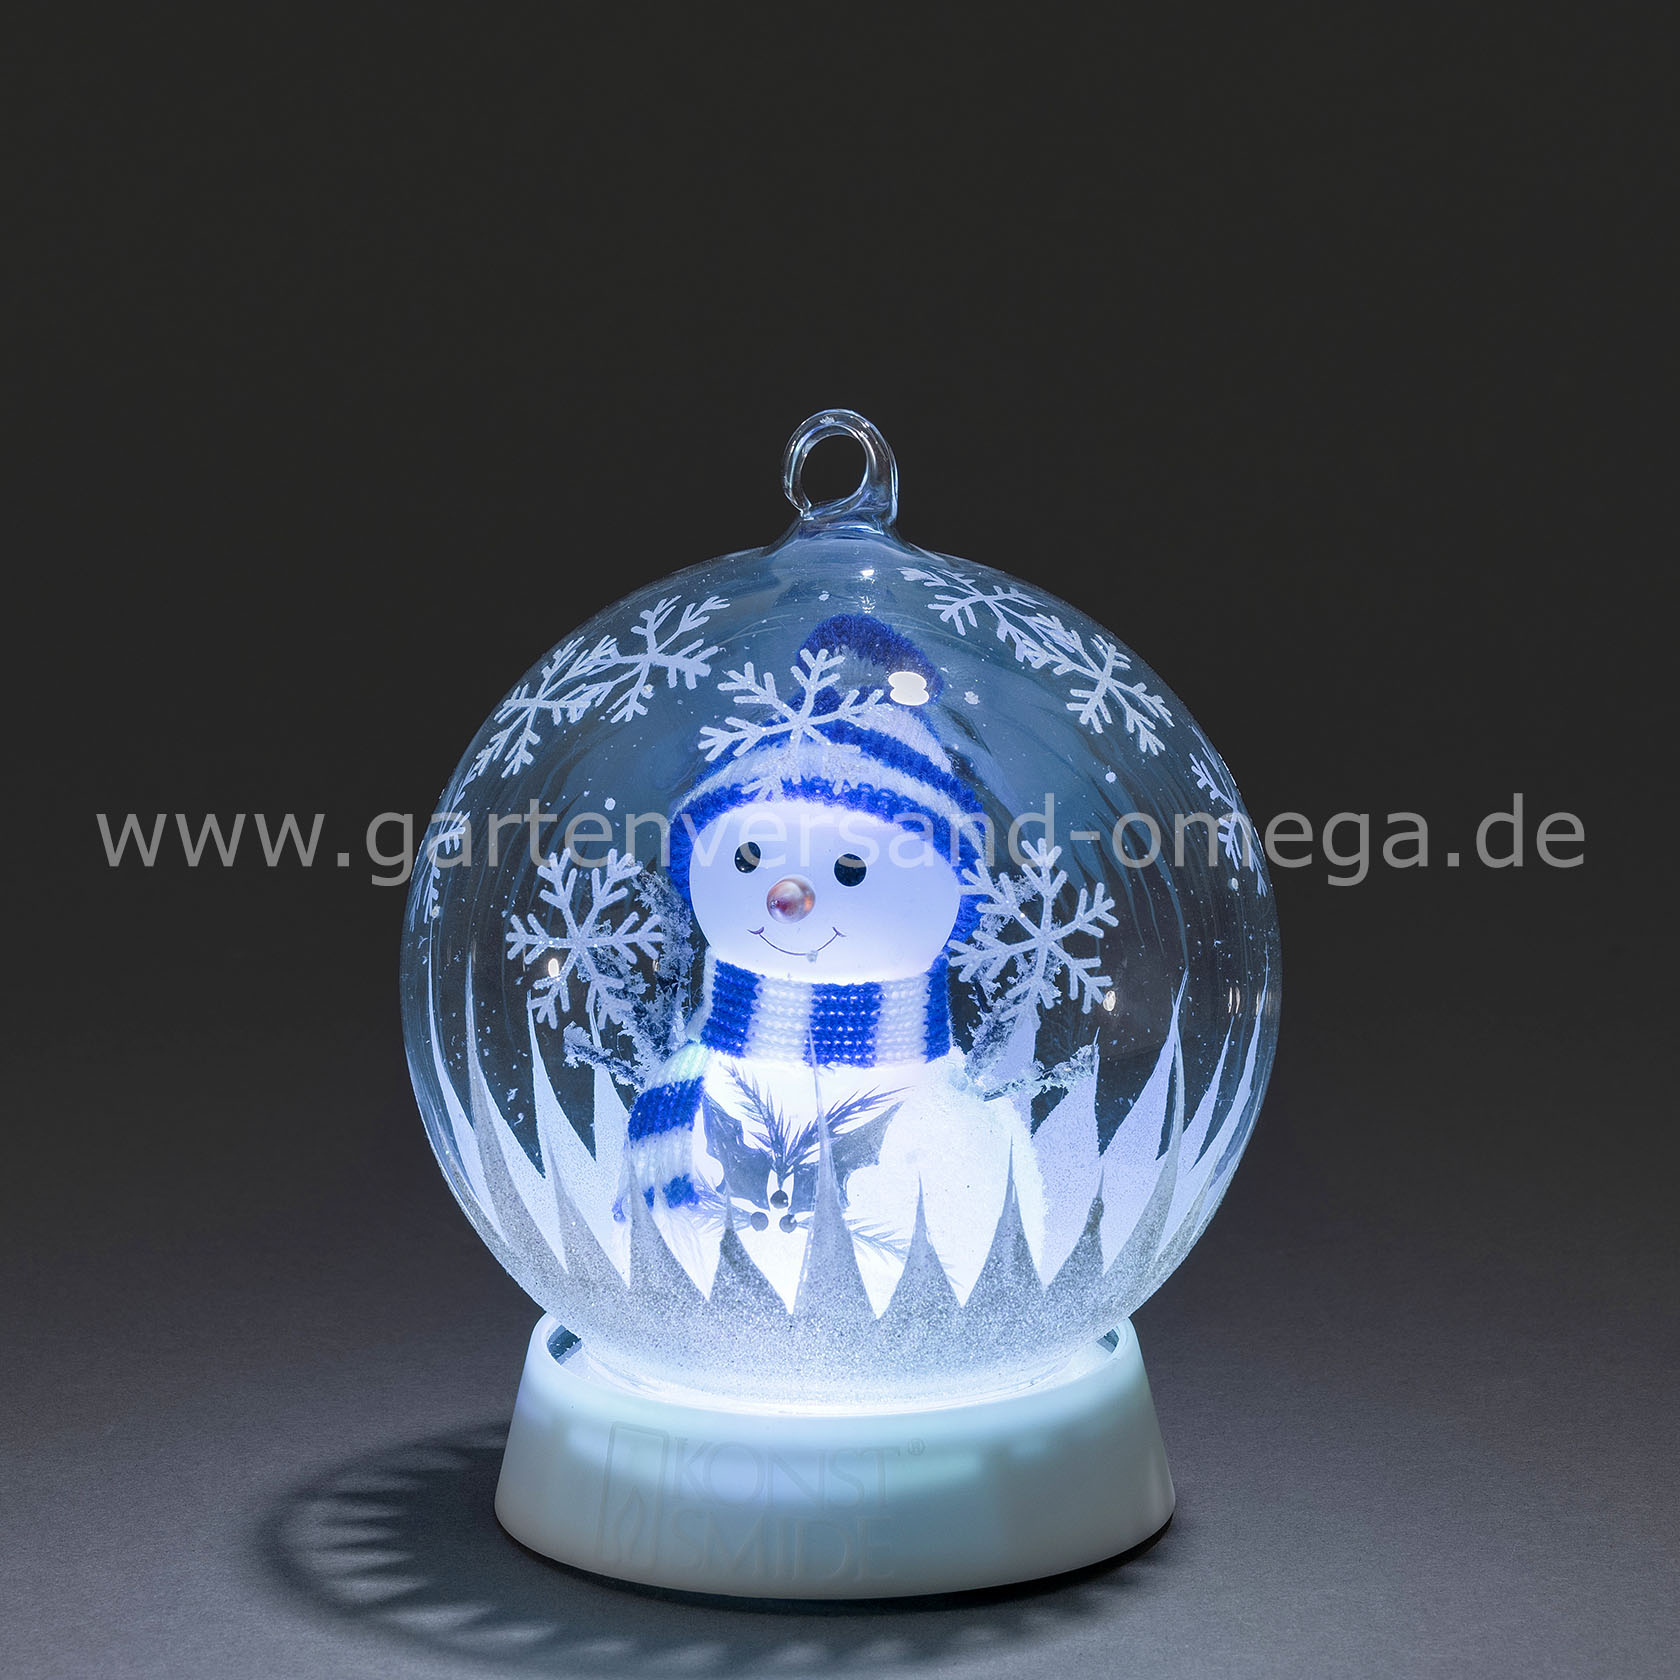 FengRise Weihnachtsdekoration LED Nachtlicht Schneeflocke Santa Claus Projektor Lichter mit 4 Farben drehbares Muster Schneemann Weihnachtsbaum Glocke für Weihnachtsschmuck 